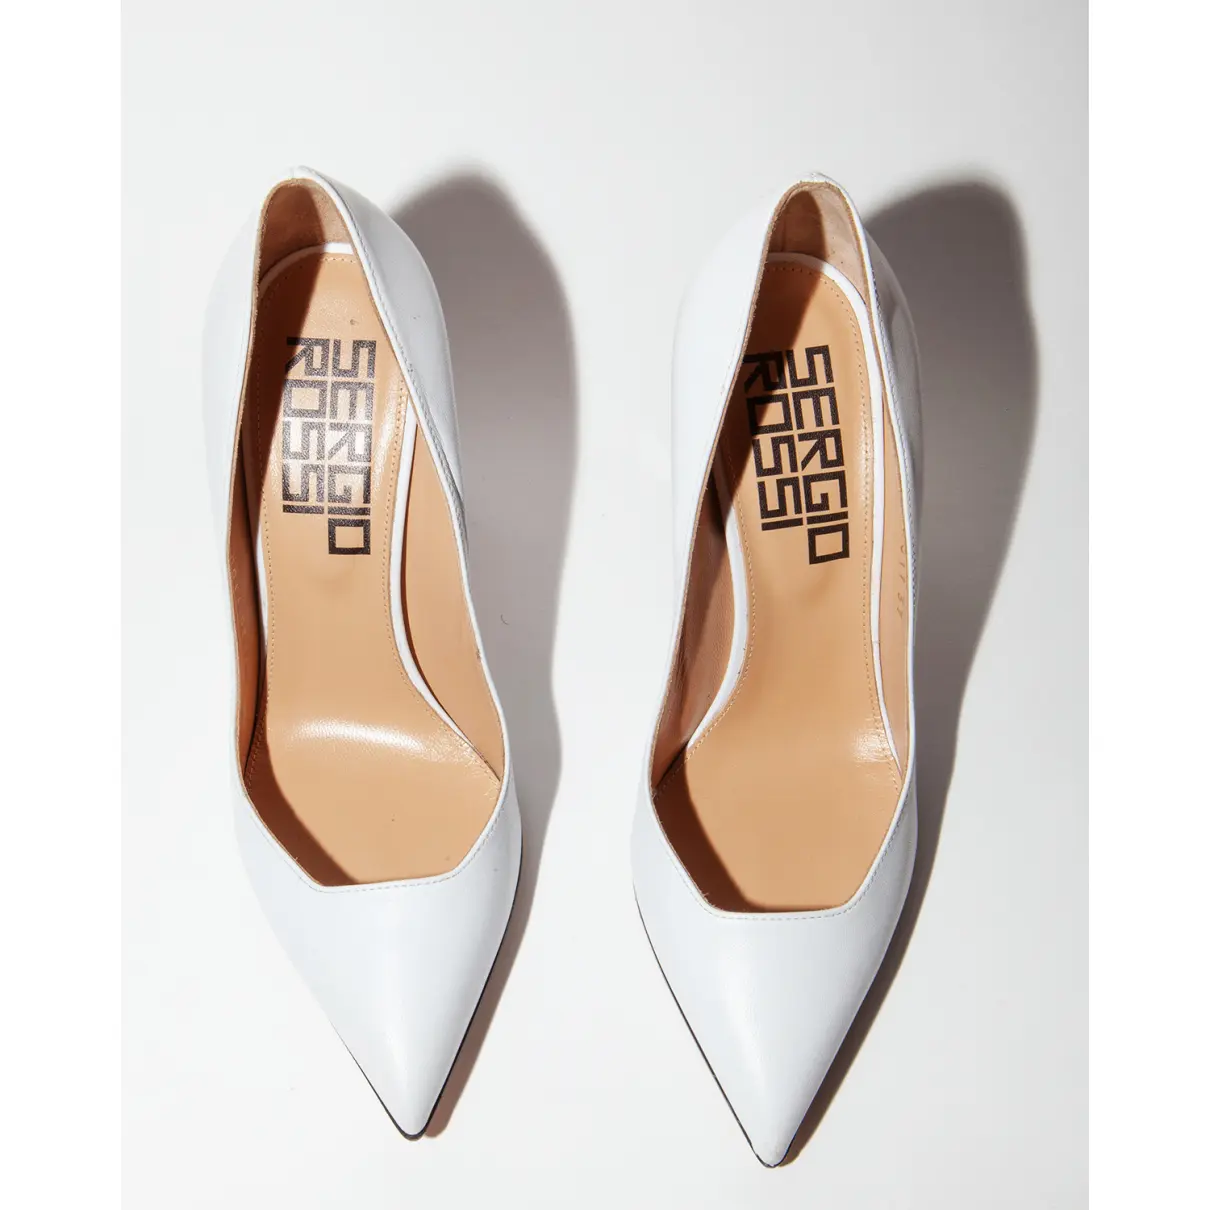 Buy Sergio Rossi SR1 leather heels online